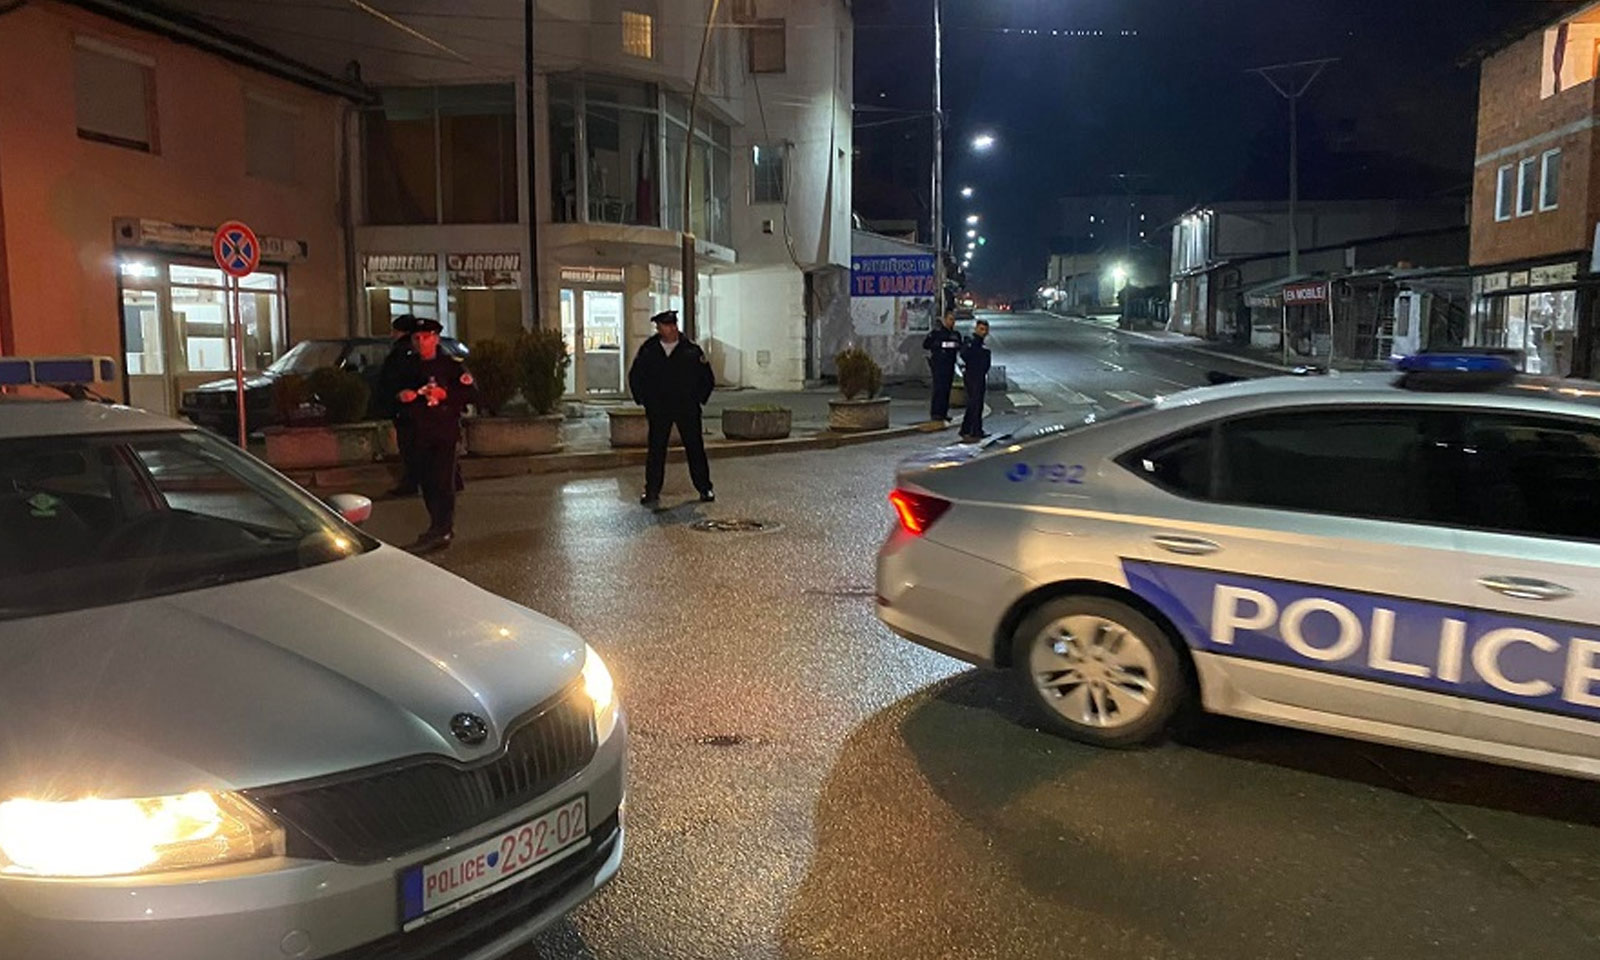 Dyshohet se ka kryer krime lufte ndaj shqiptarëve në Gjakovë, arrestohet serbi në Bërnjakë